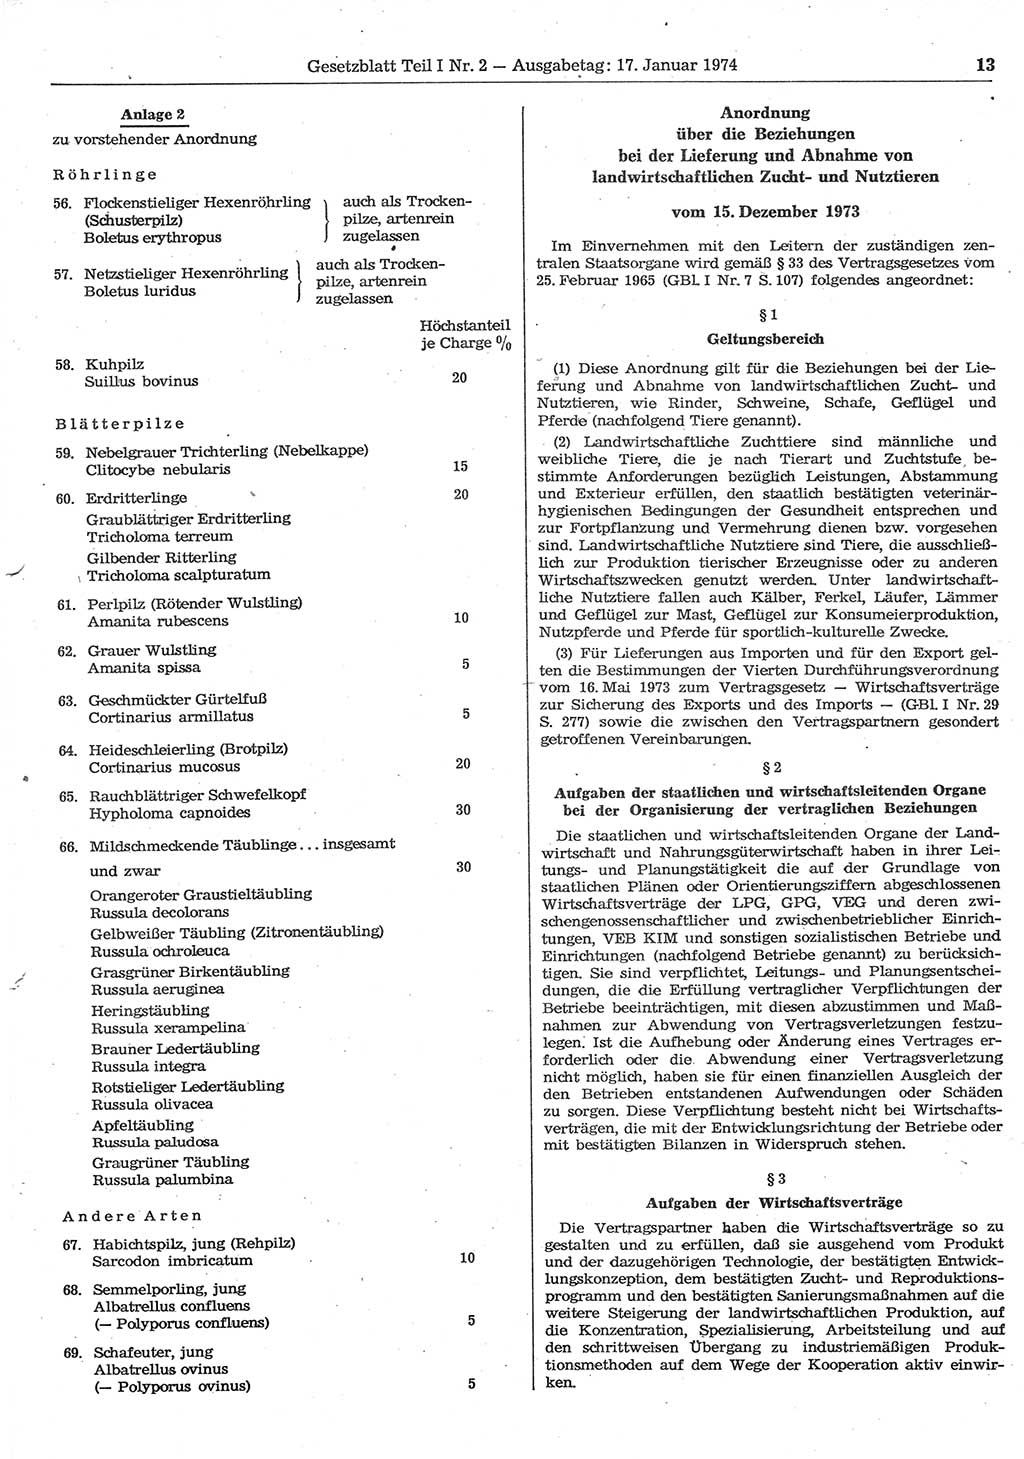 Gesetzblatt (GBl.) der Deutschen Demokratischen Republik (DDR) Teil Ⅰ 1974, Seite 13 (GBl. DDR Ⅰ 1974, S. 13)